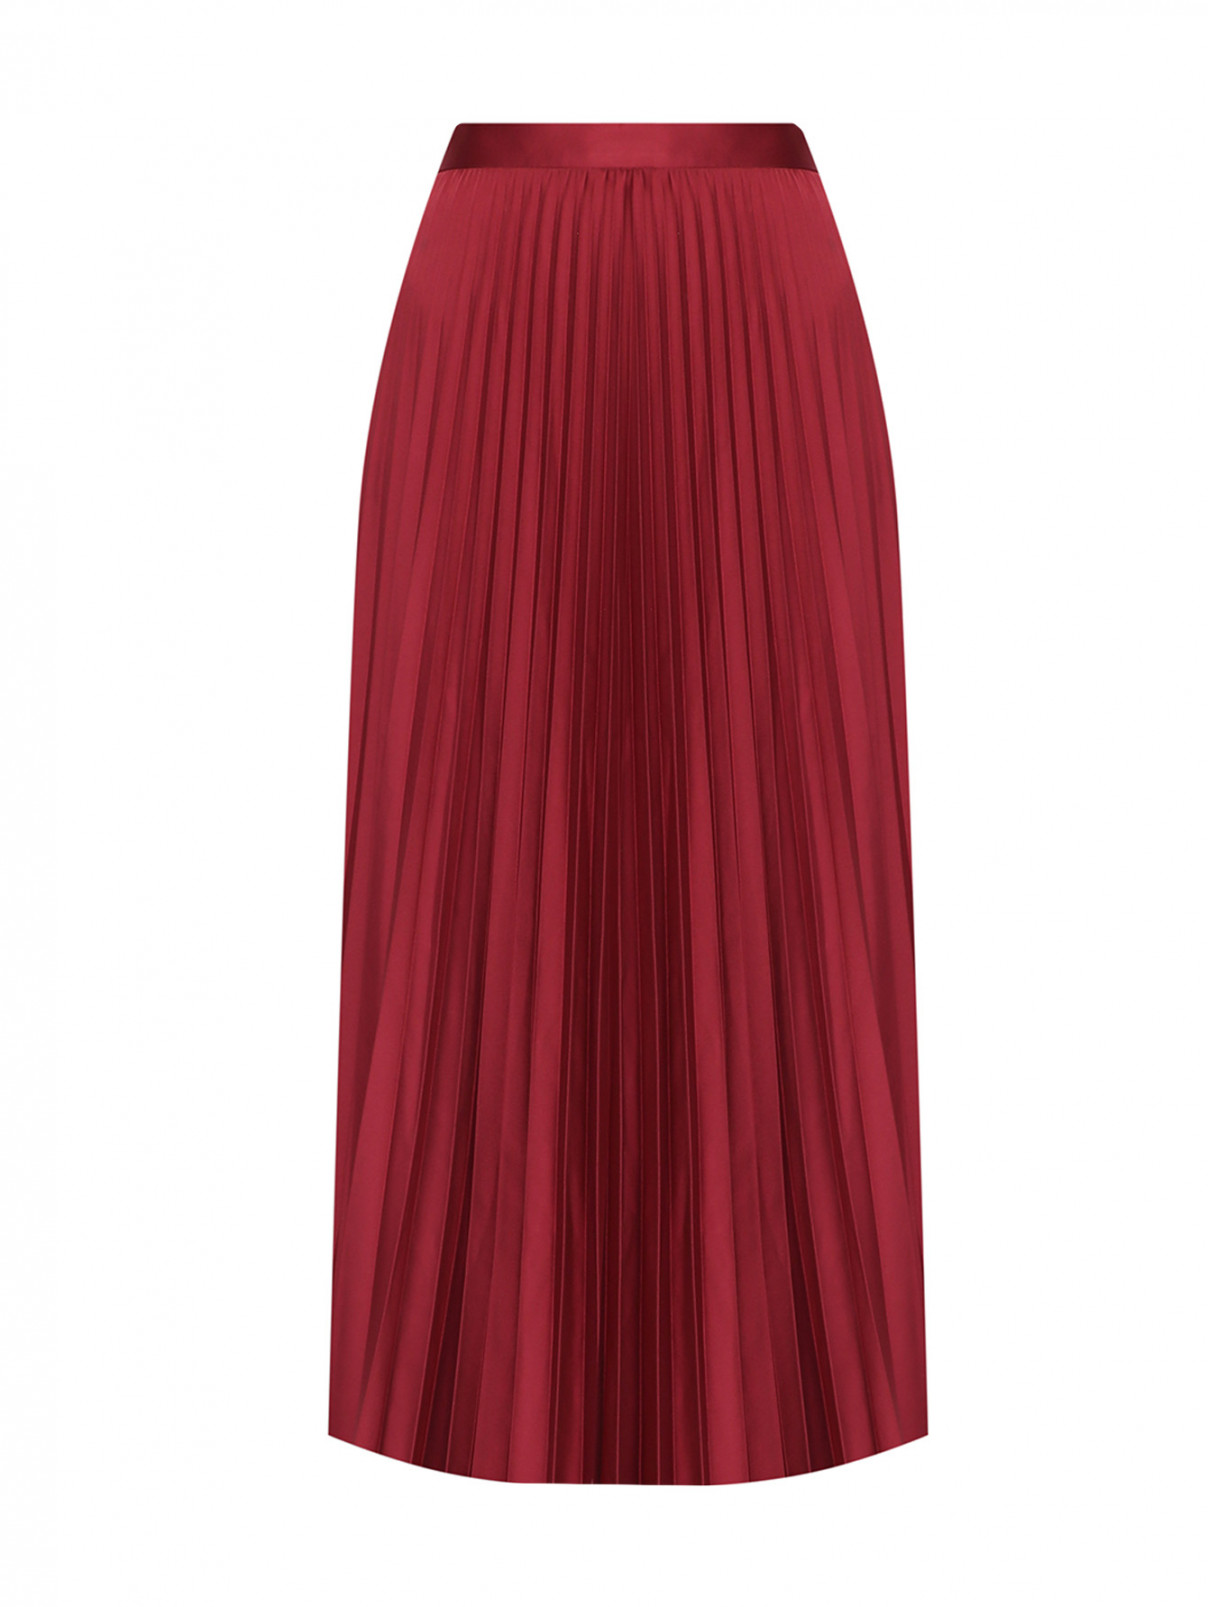 Плиссированная юбка-миди Shade  –  Общий вид  – Цвет:  Красный